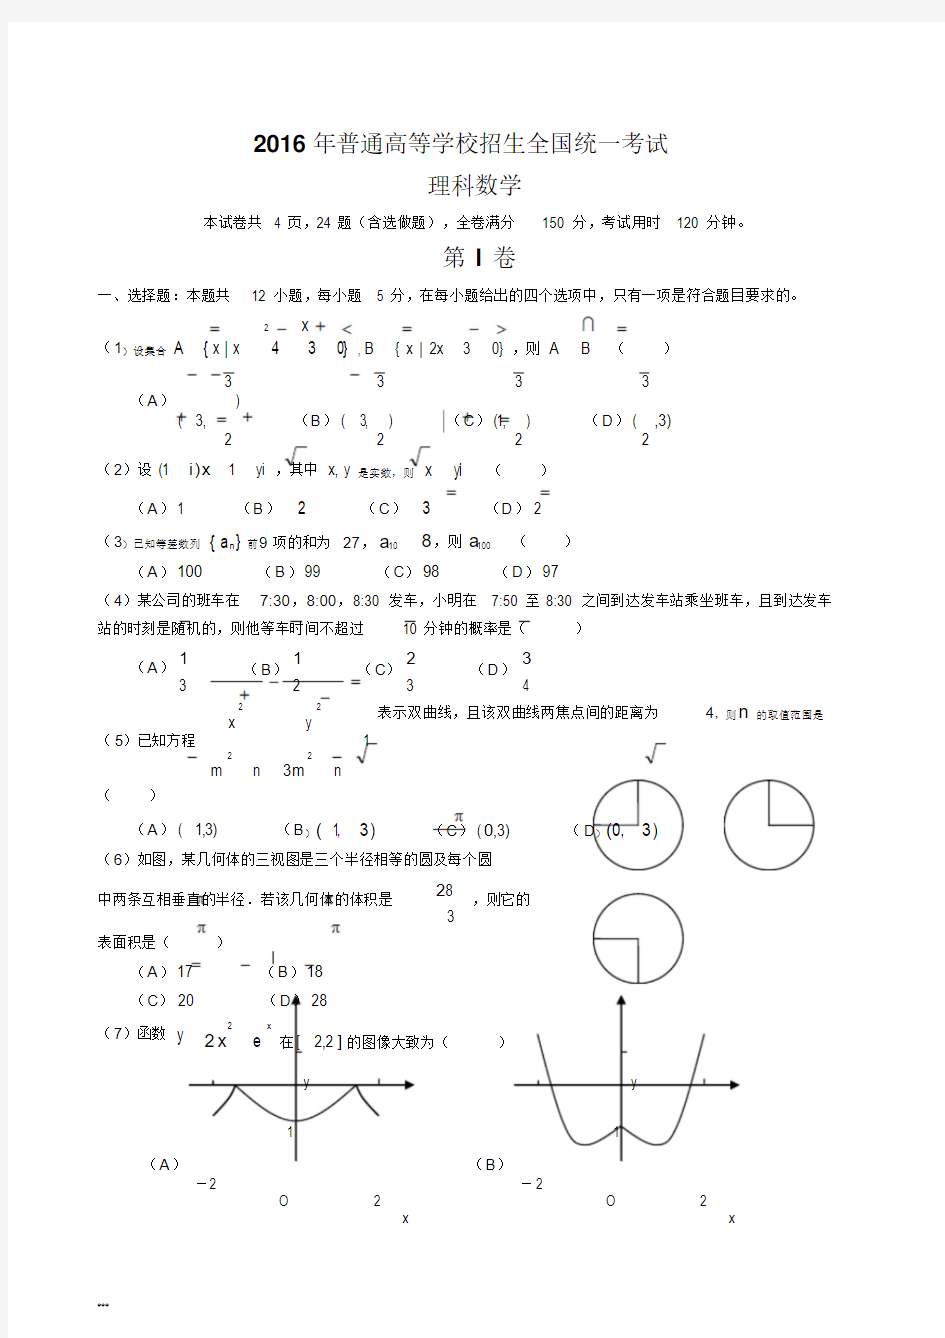 2016年高考新课标1卷(理科数学试卷)